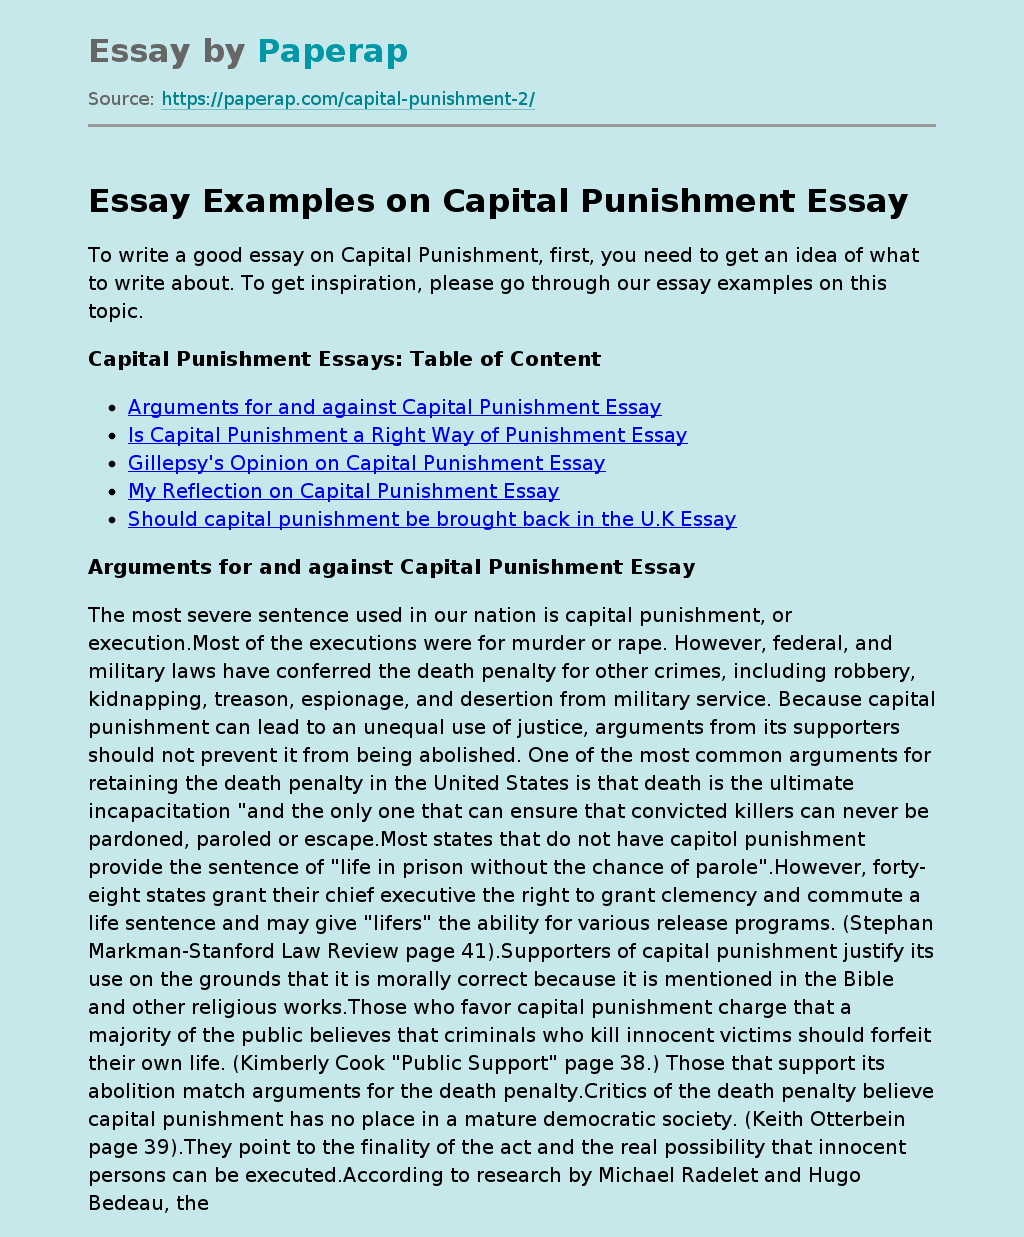 capital punishment legal essay